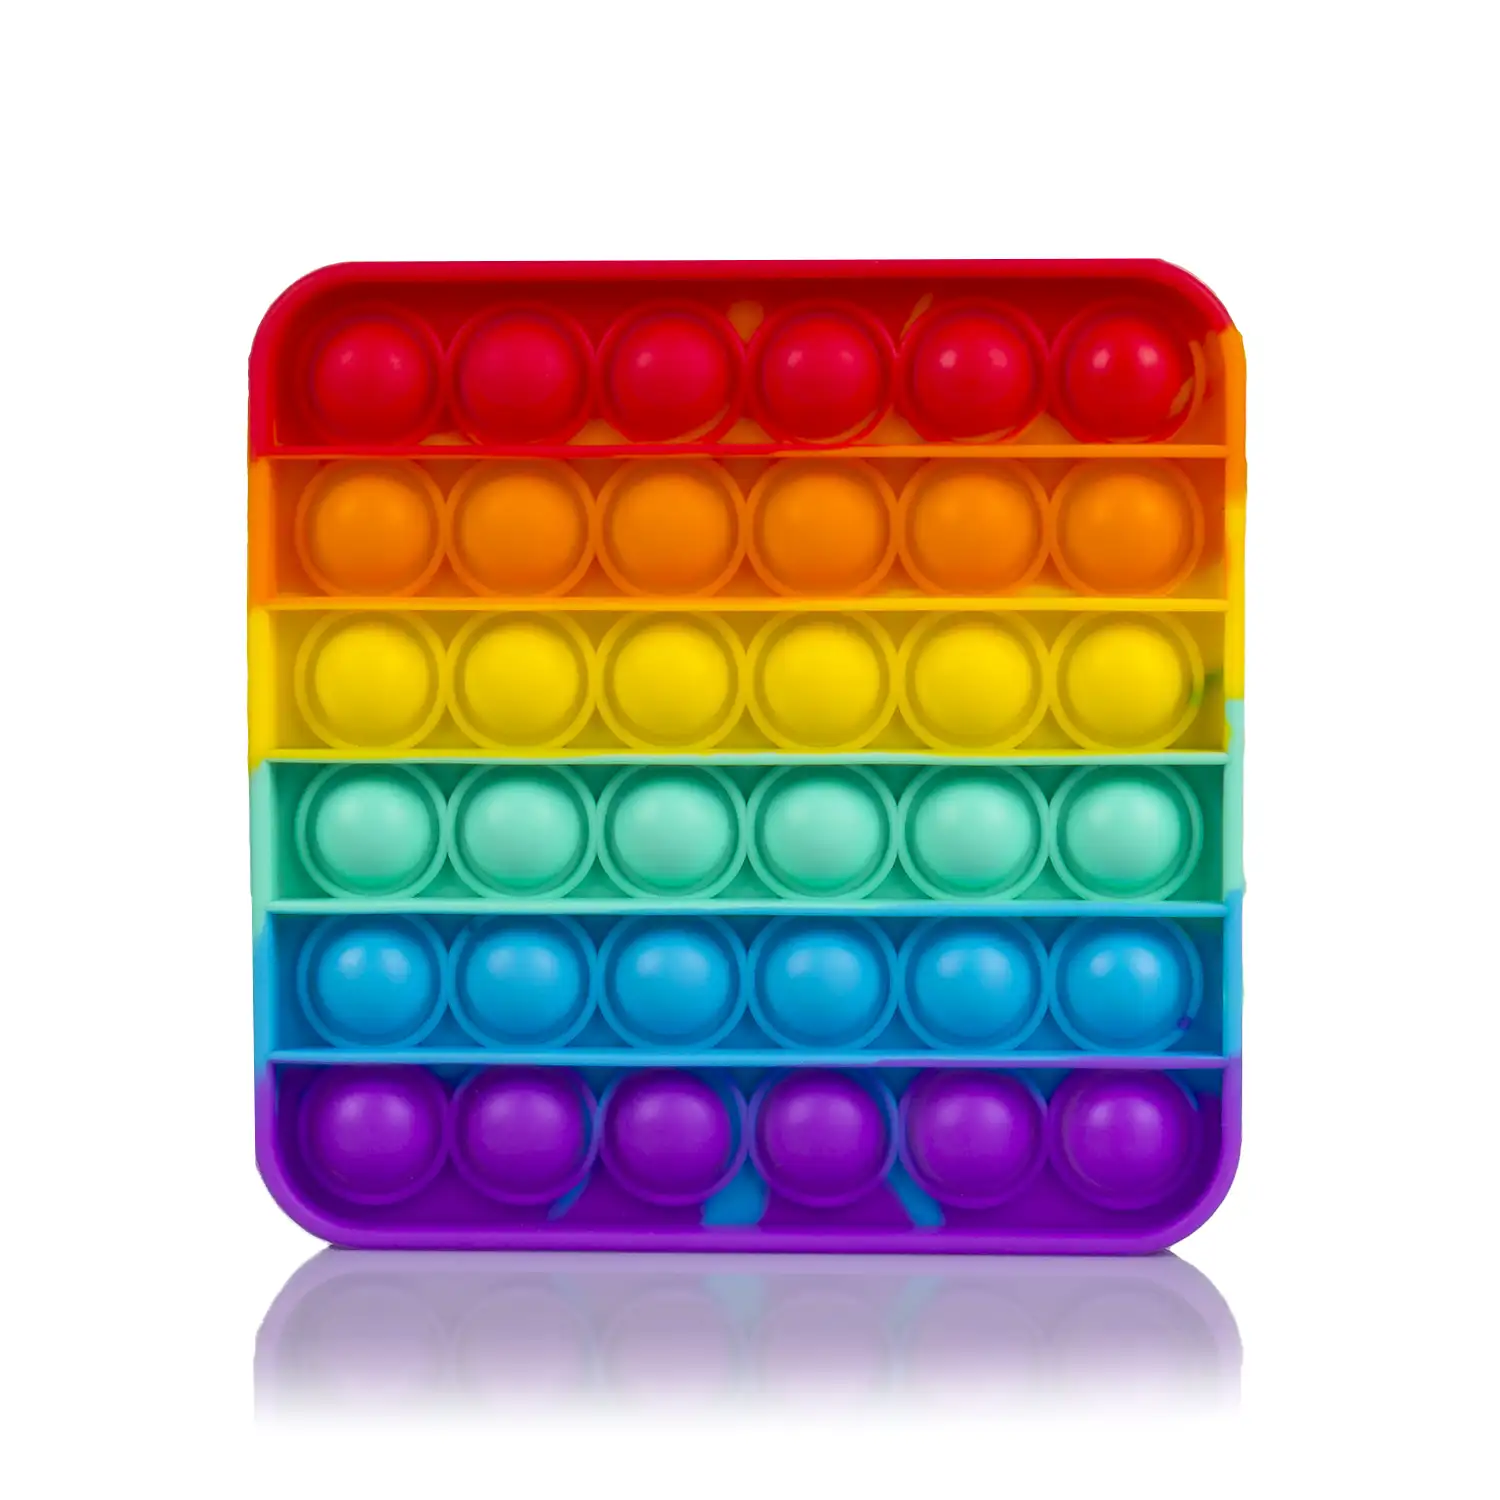 Bubble Pop It juguete sensitivo desestresante, burbujas de silicona para apretar y pulsar. Diseño cuadrado multicolor.